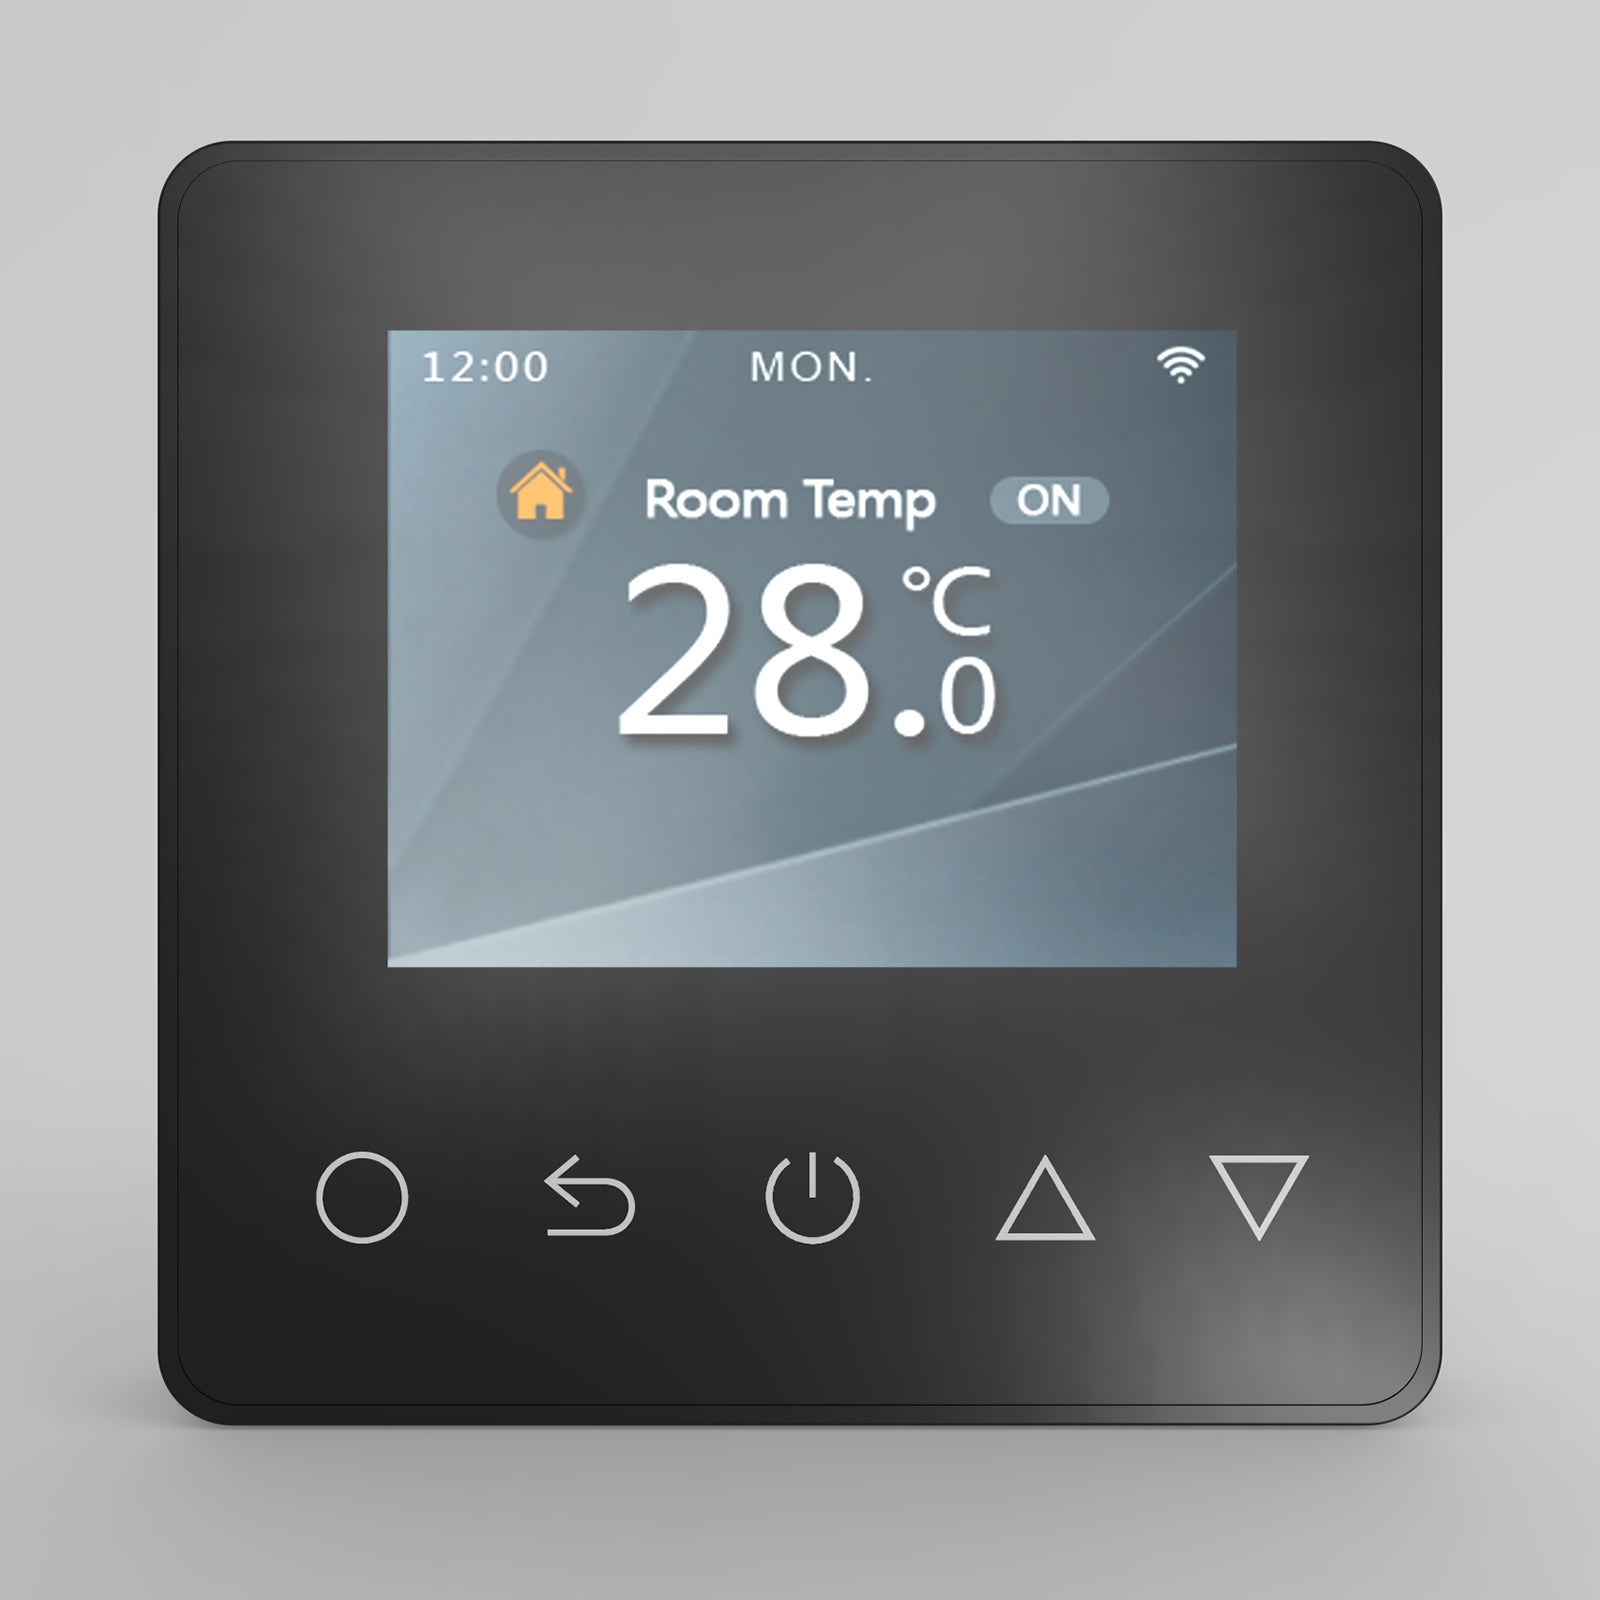 El termostato inteligente tado° permitirá planificar tu gasto en calefacción